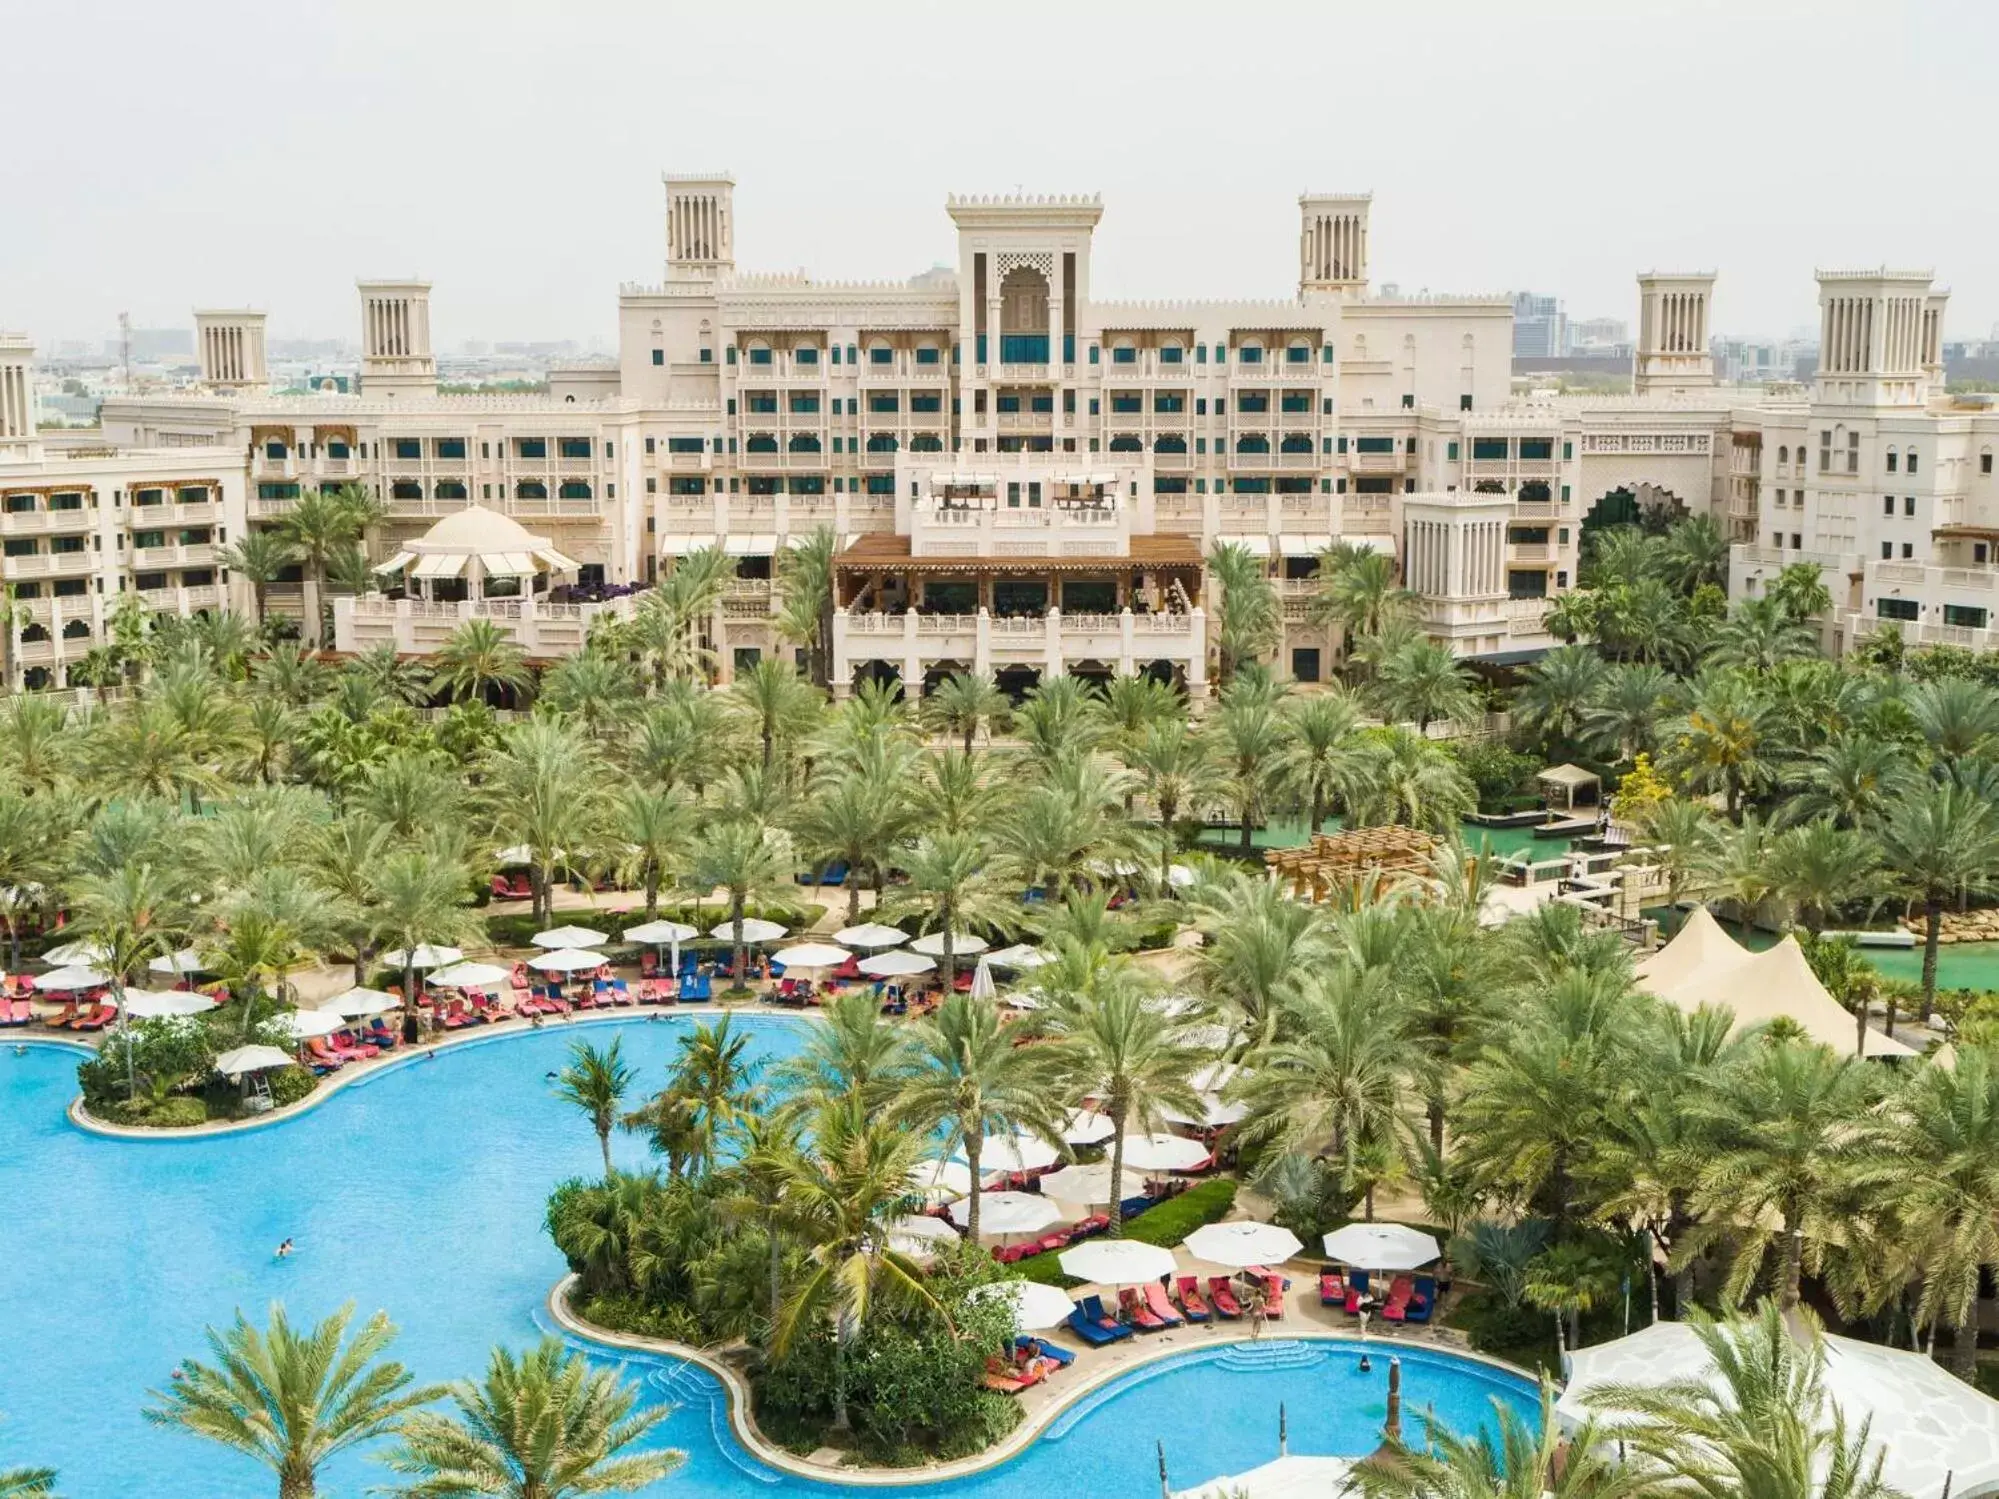 Bird's eye view, Pool View in Jumeirah Al Qasr